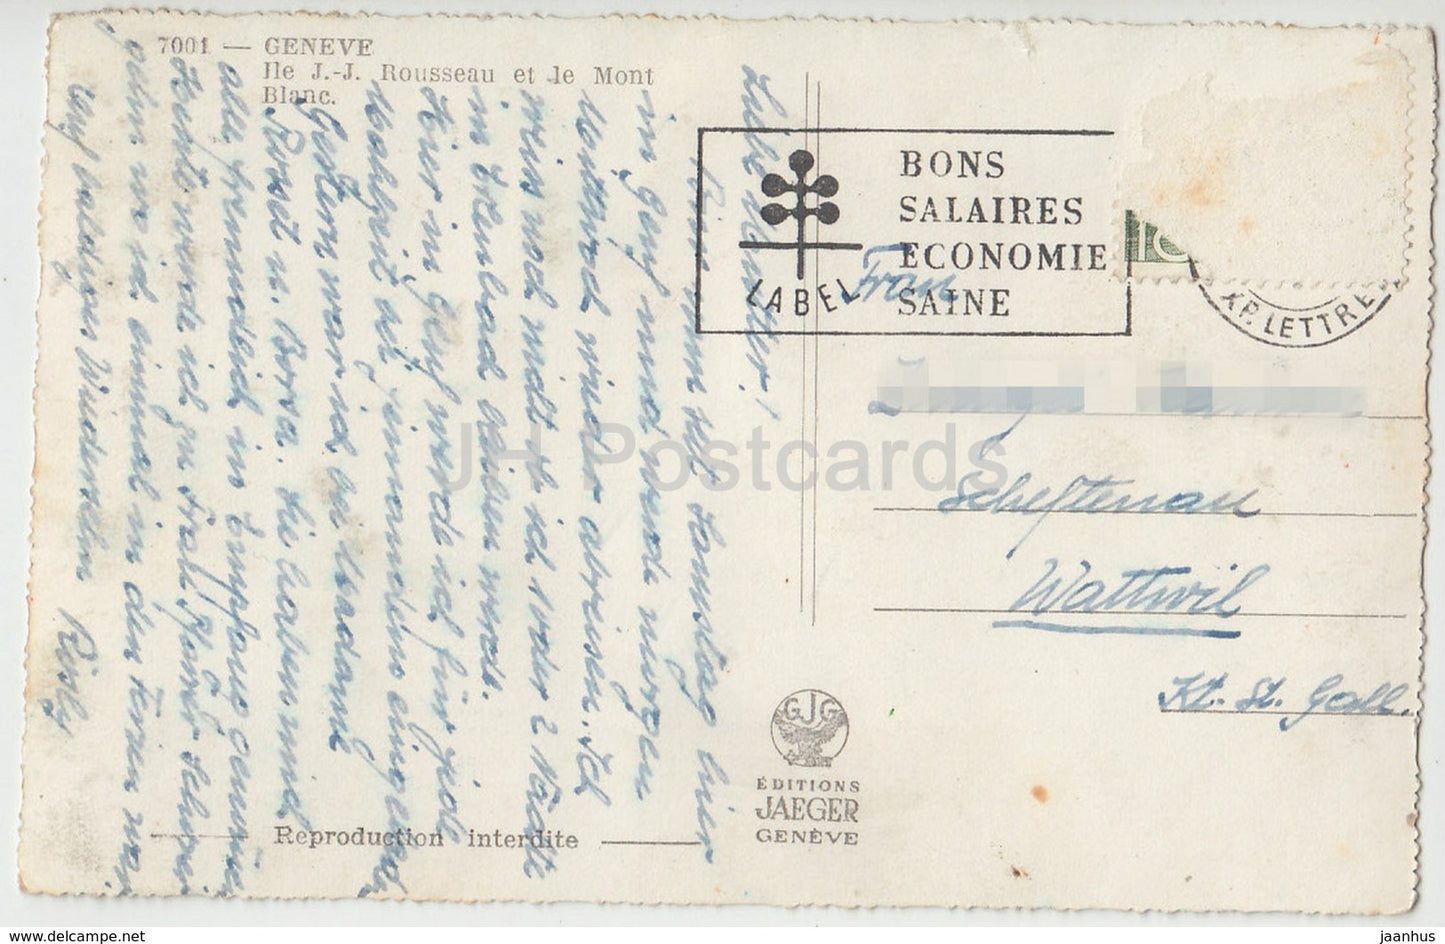 Genève - Genève - Île J.-J. Rousseau et le Mont Blanc - 7001 - Suisse - carte postale ancienne - occasion